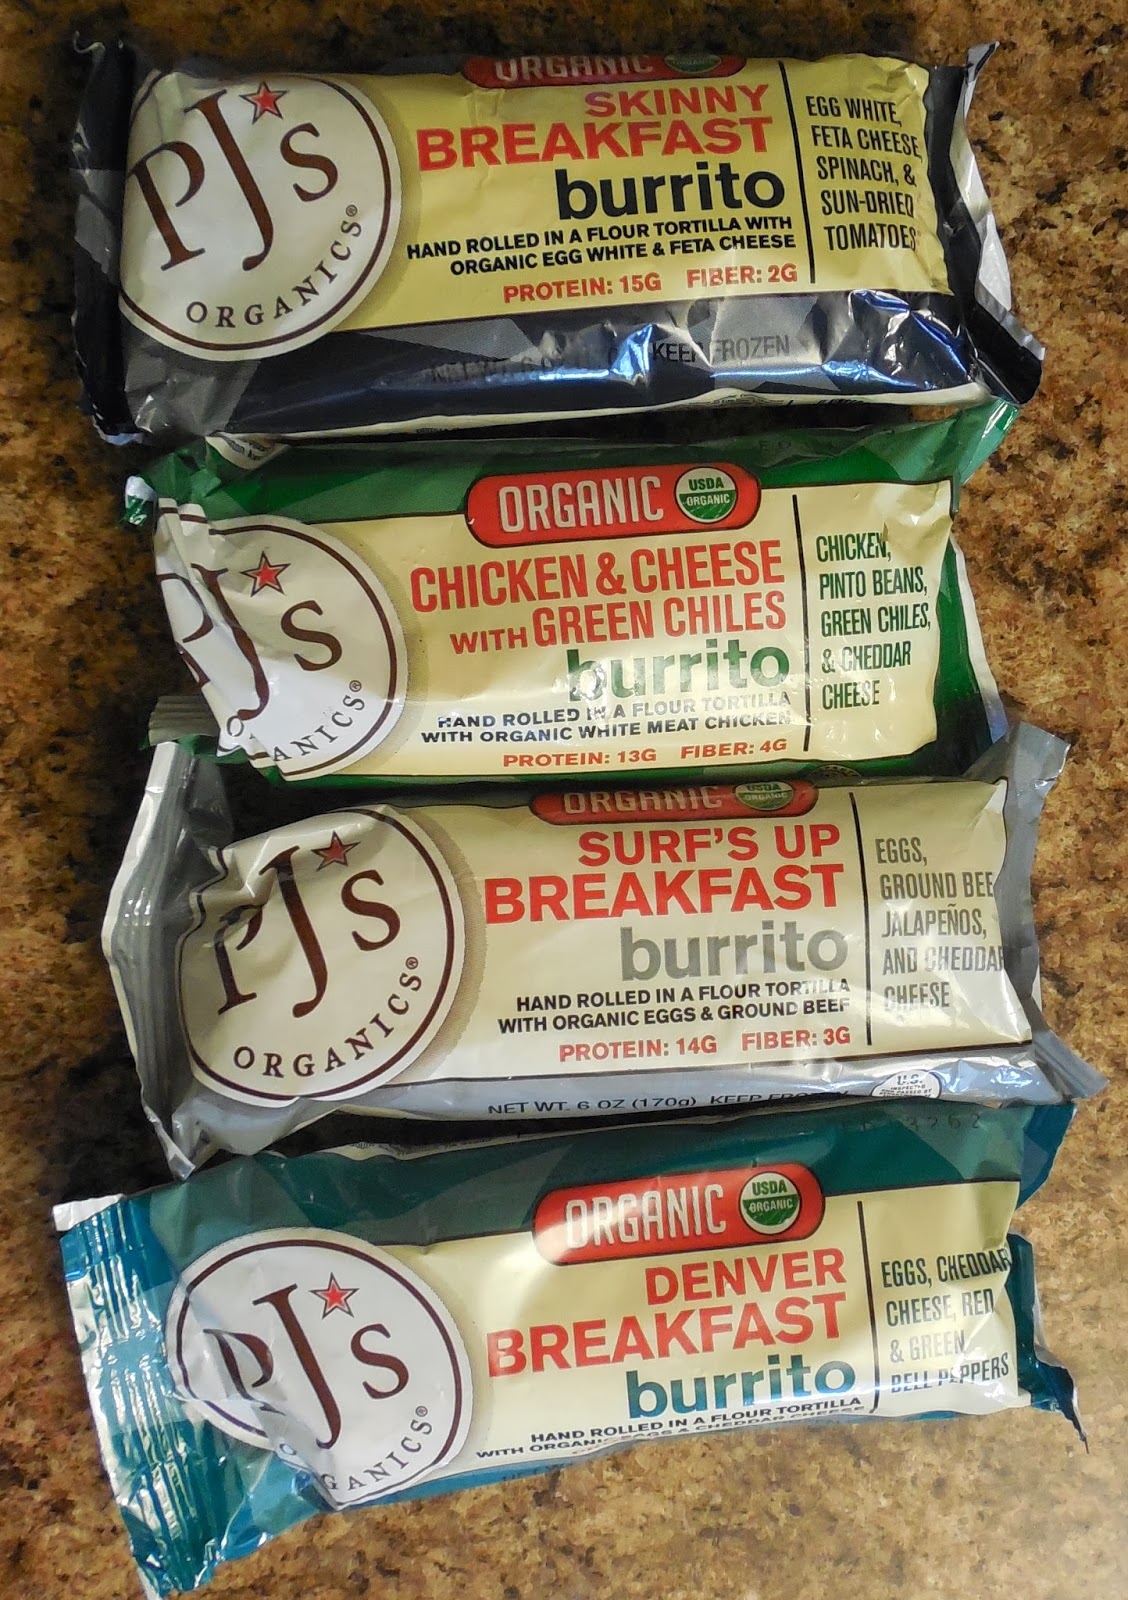 PJ's Organic Burritos